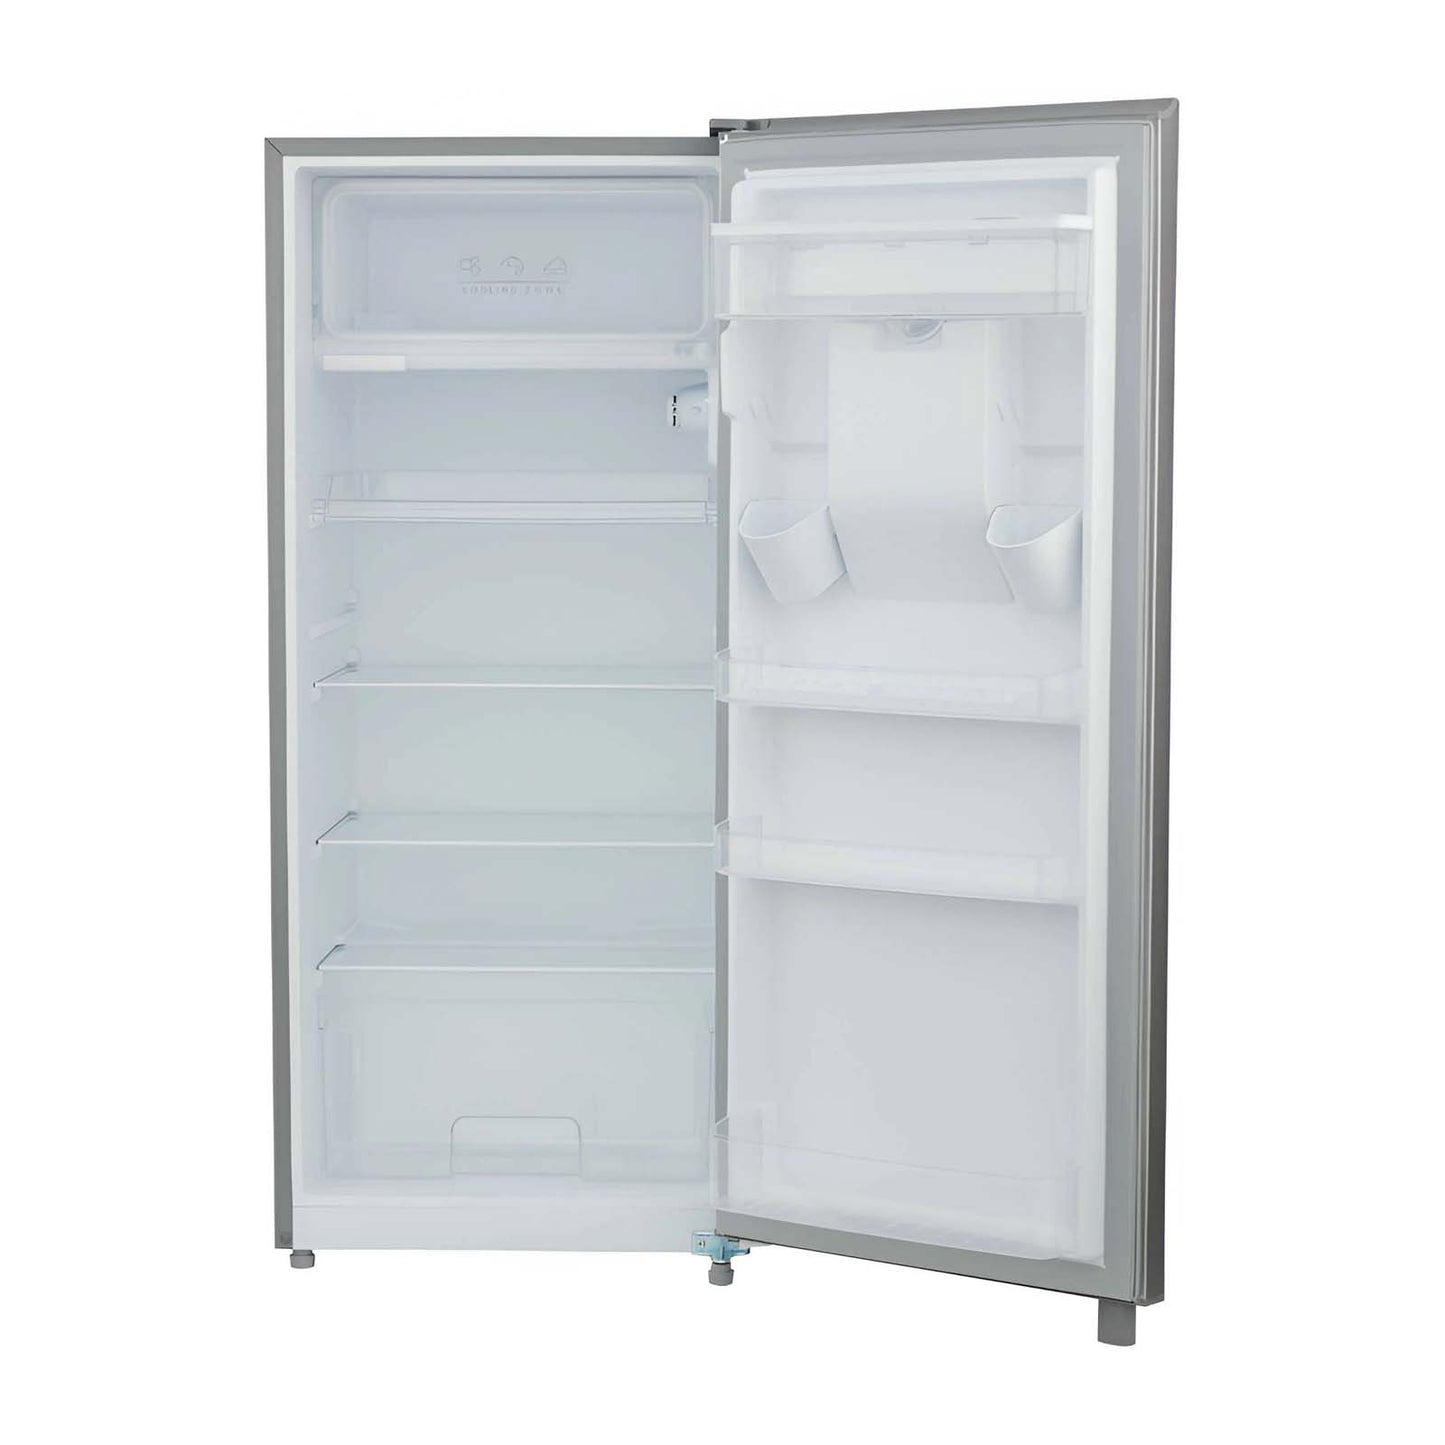 Refrigerador Single Door Midea 7 Pies Cúbicos Low Frost MDRD190CCNDXW